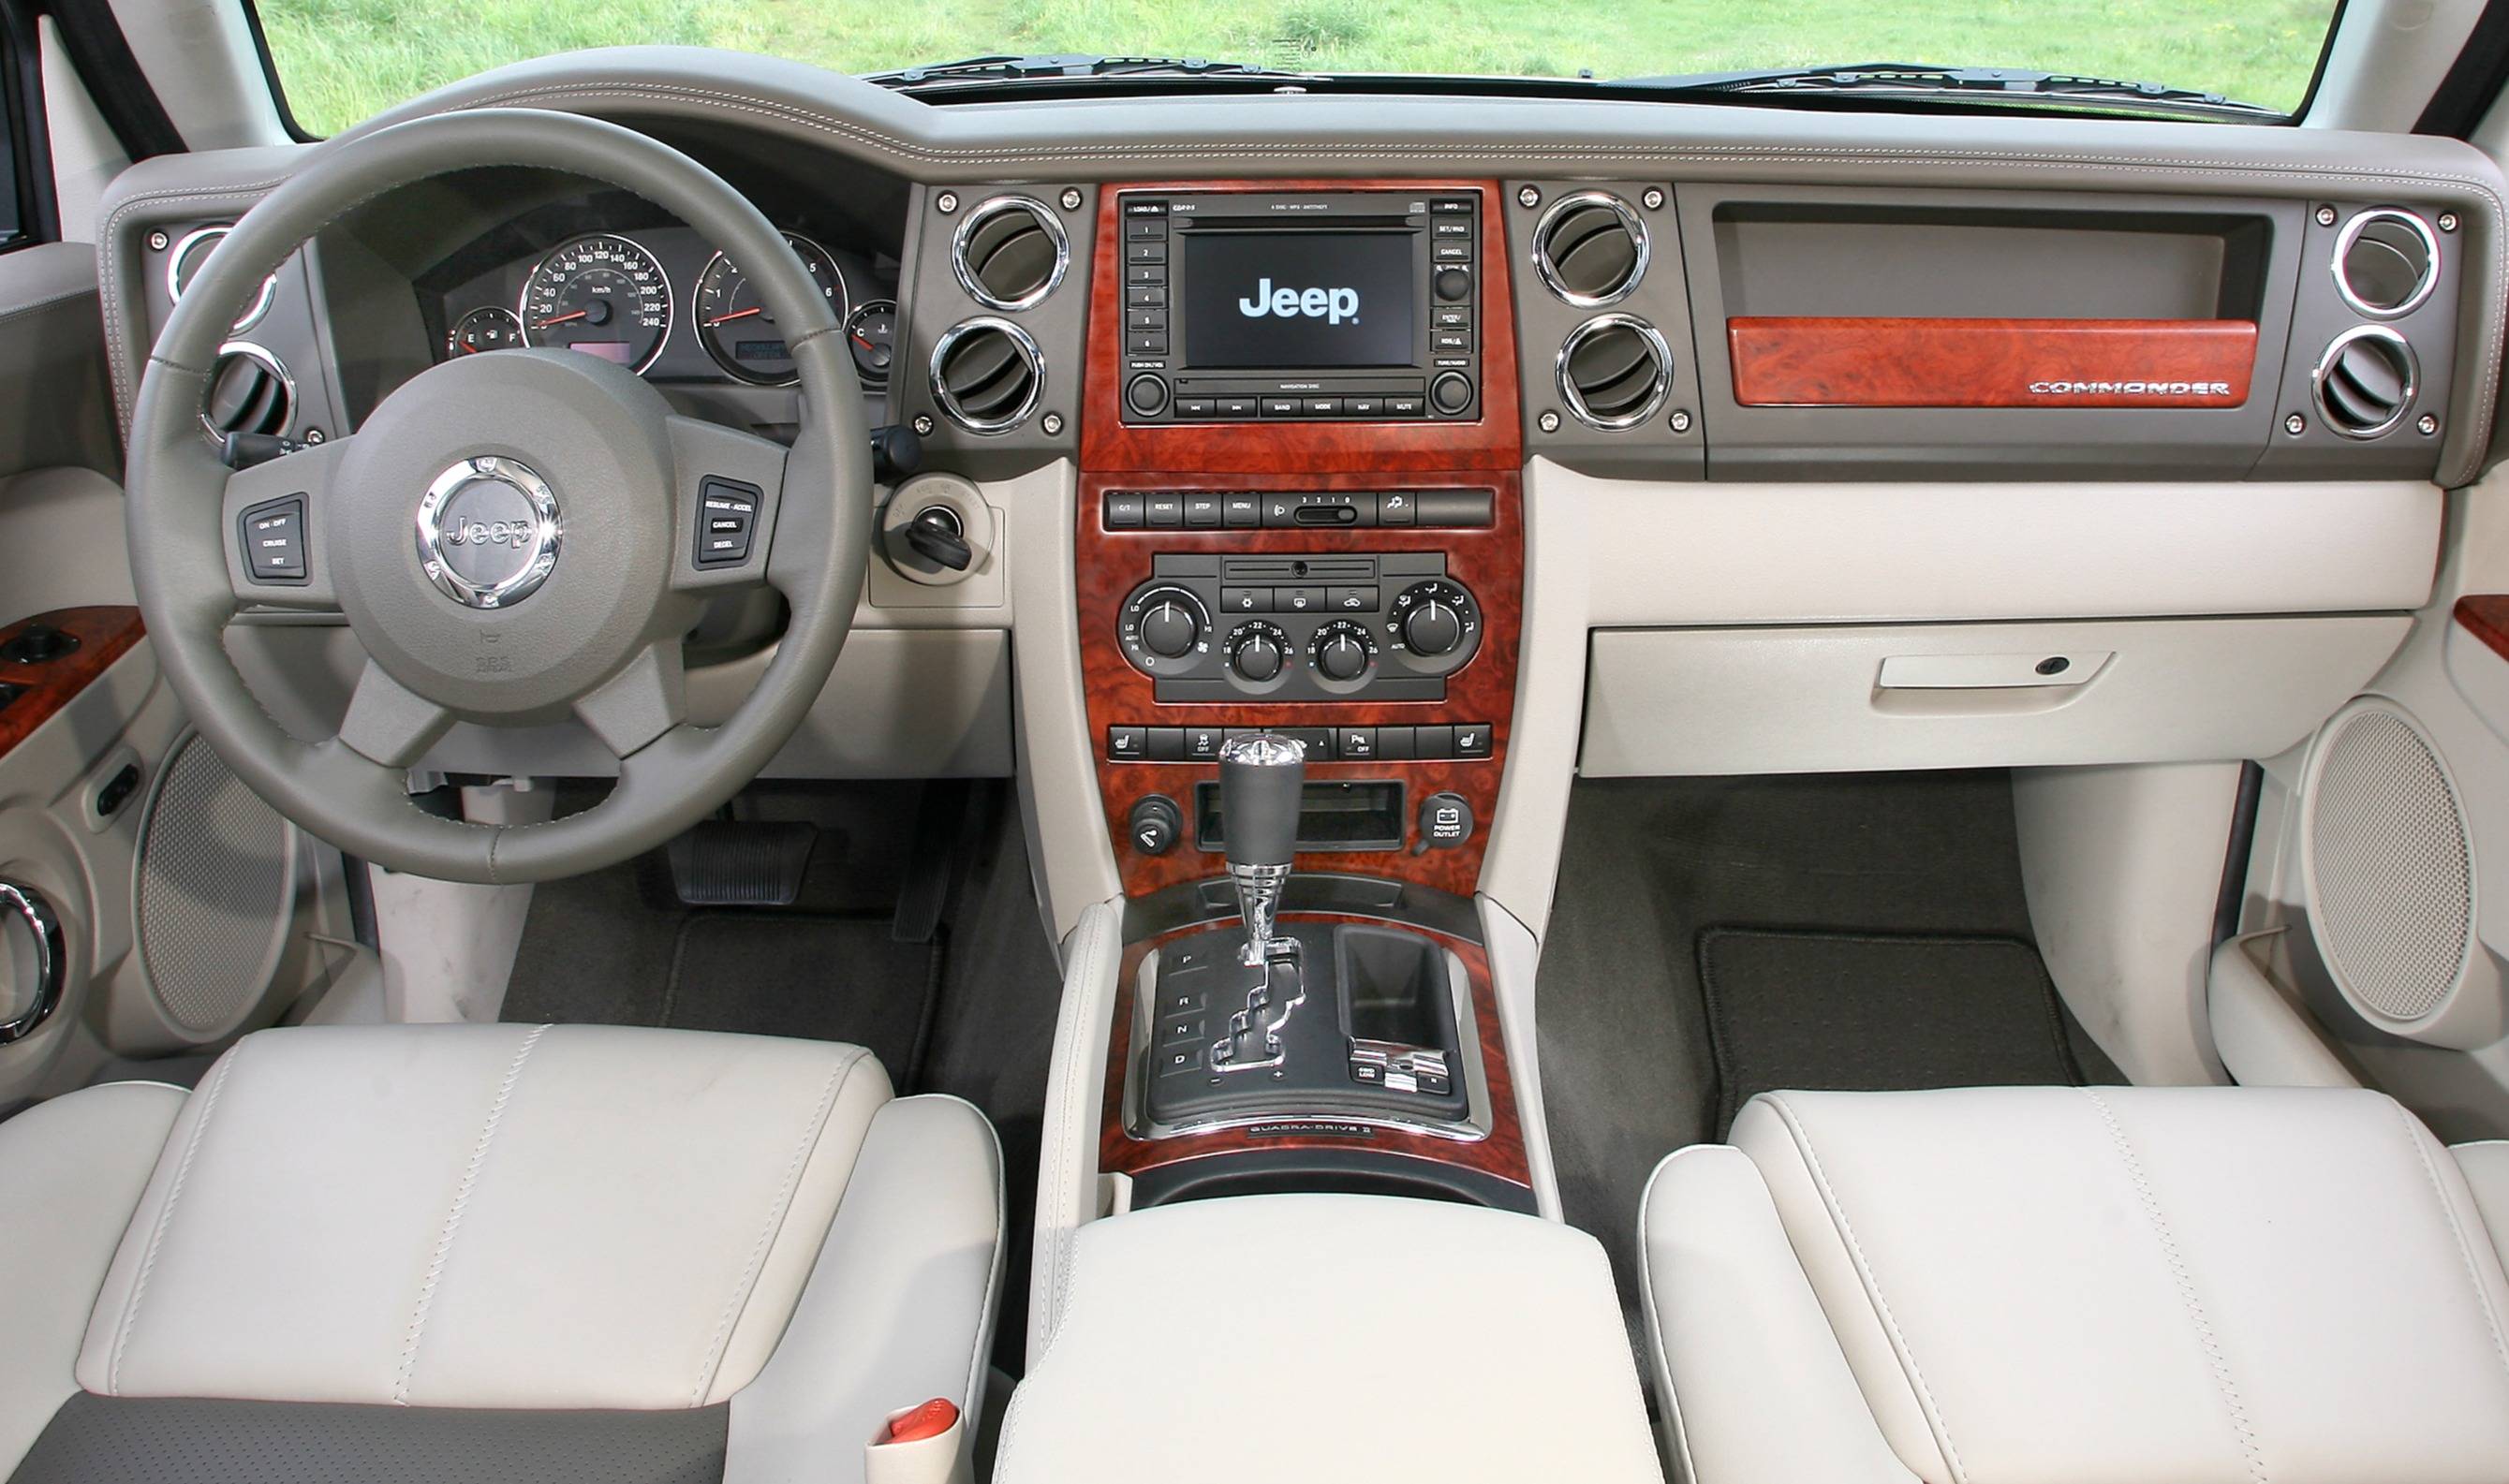 Jeep Commander dimensioni, interni, motori, prezzi e concorrenti